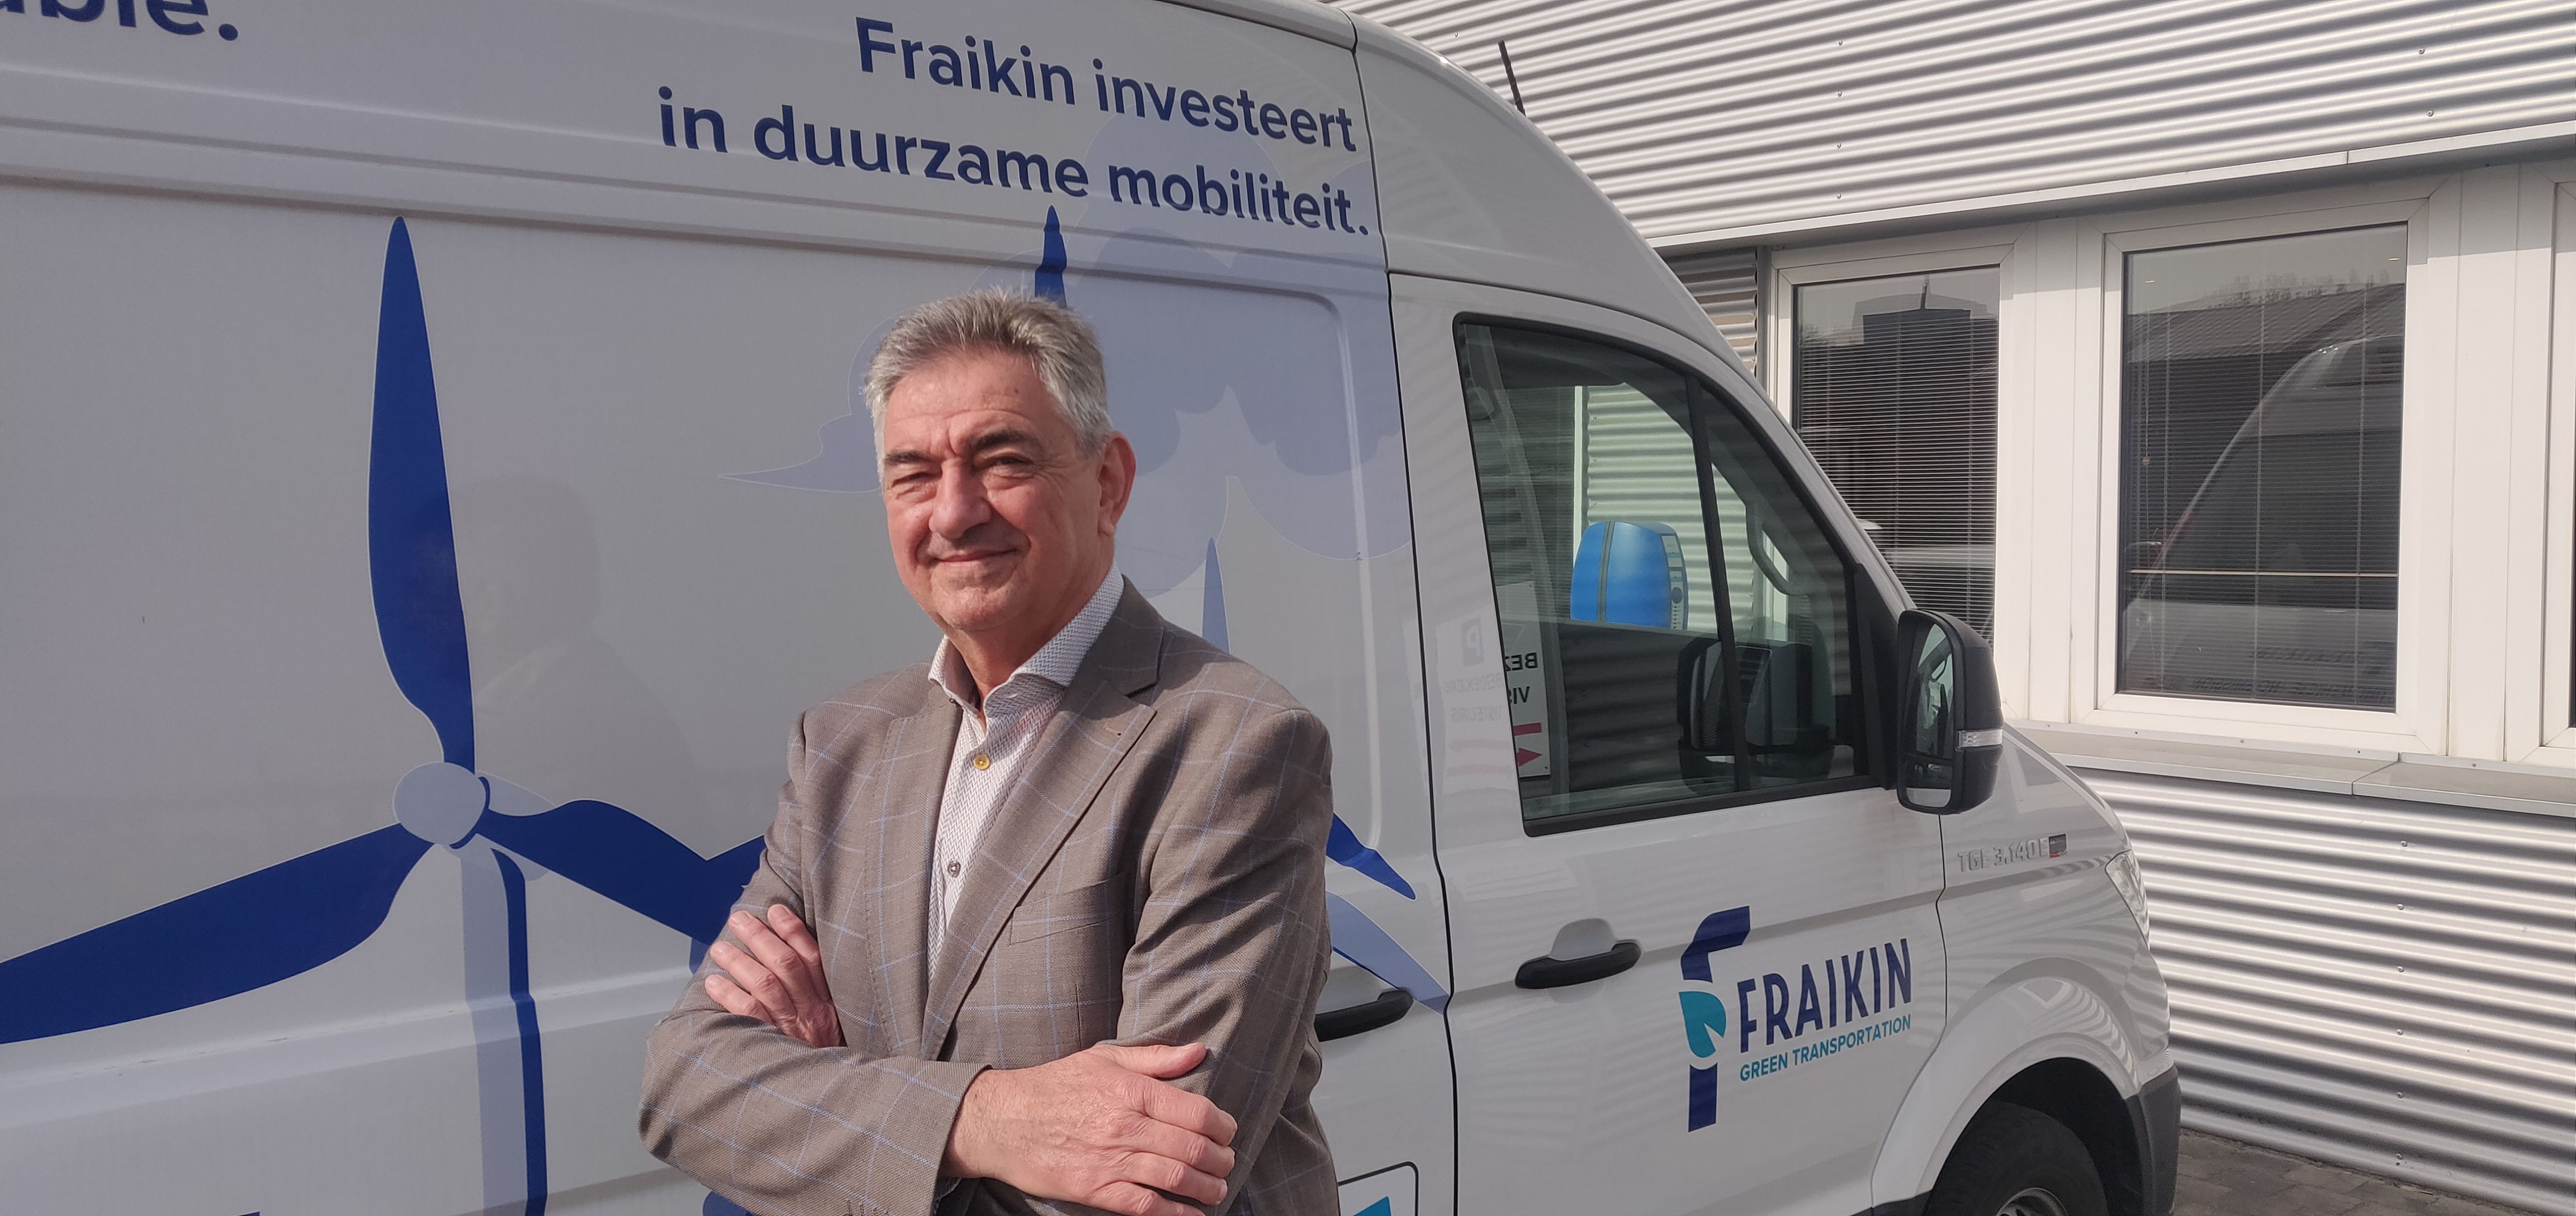 Jan Van De Perre, CEO Fraikin Benelux